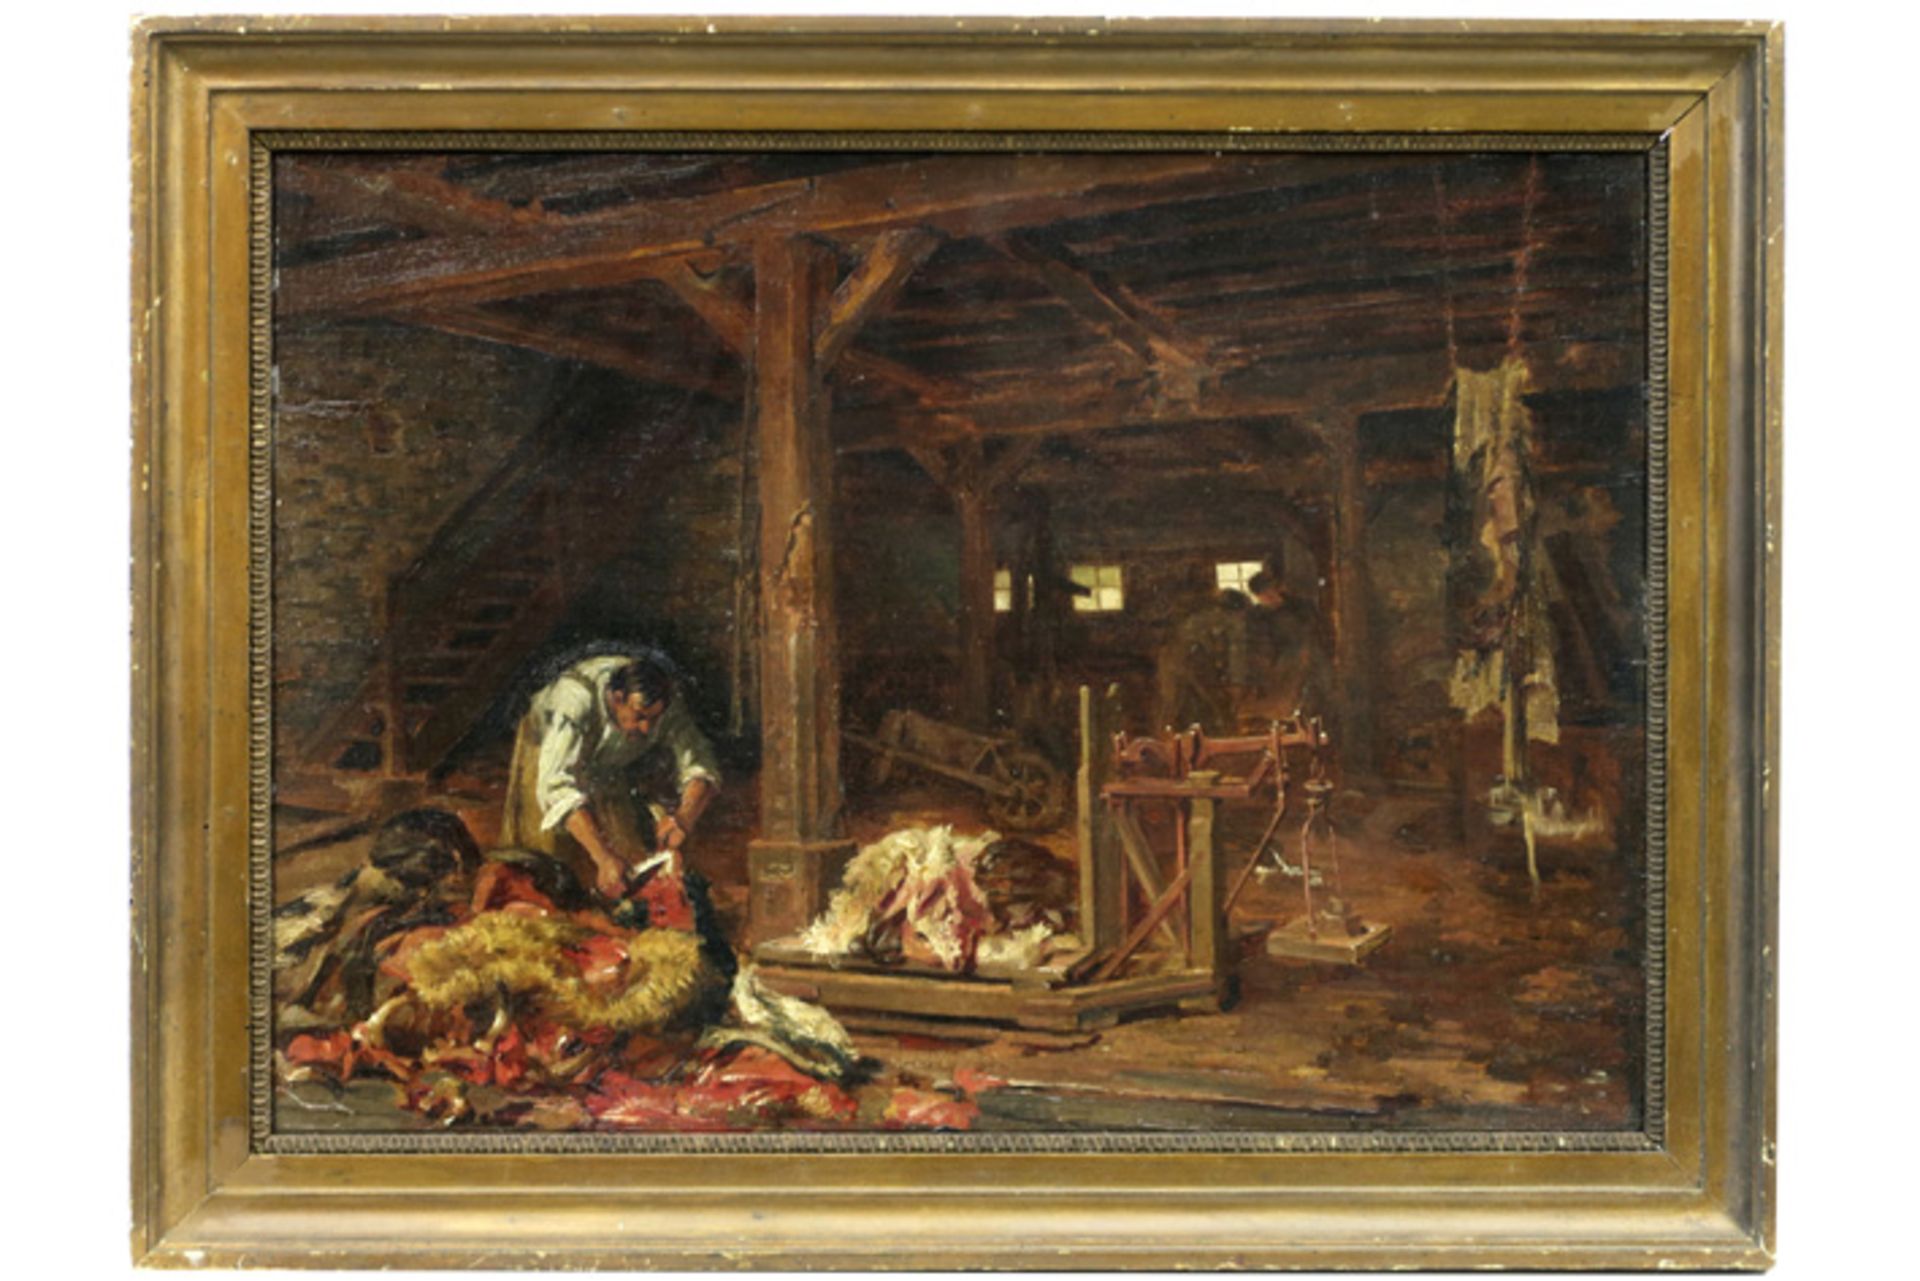 BLANC GARIN ERNEST (1843 - 1916) olieverfschilderij op paneel : "Slager in een stal" - 40 x 55||19th - Image 2 of 3